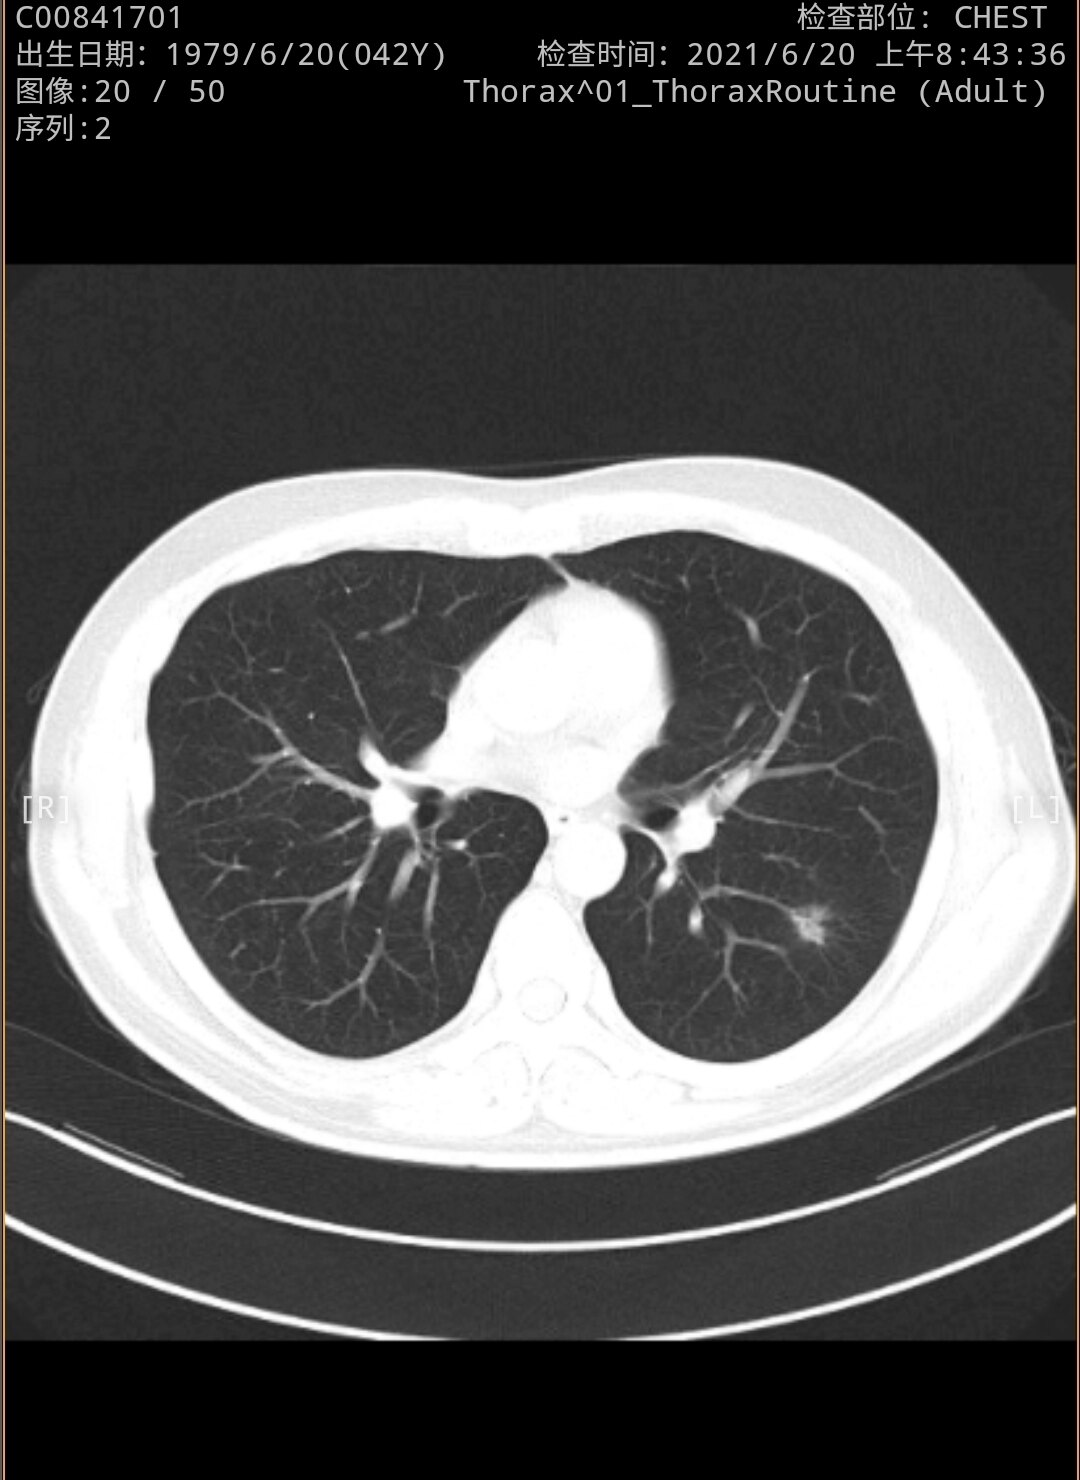 刘懿博士说肺癌(二二亖三)四十二岁相隔一年肺部出现磨玻璃结节